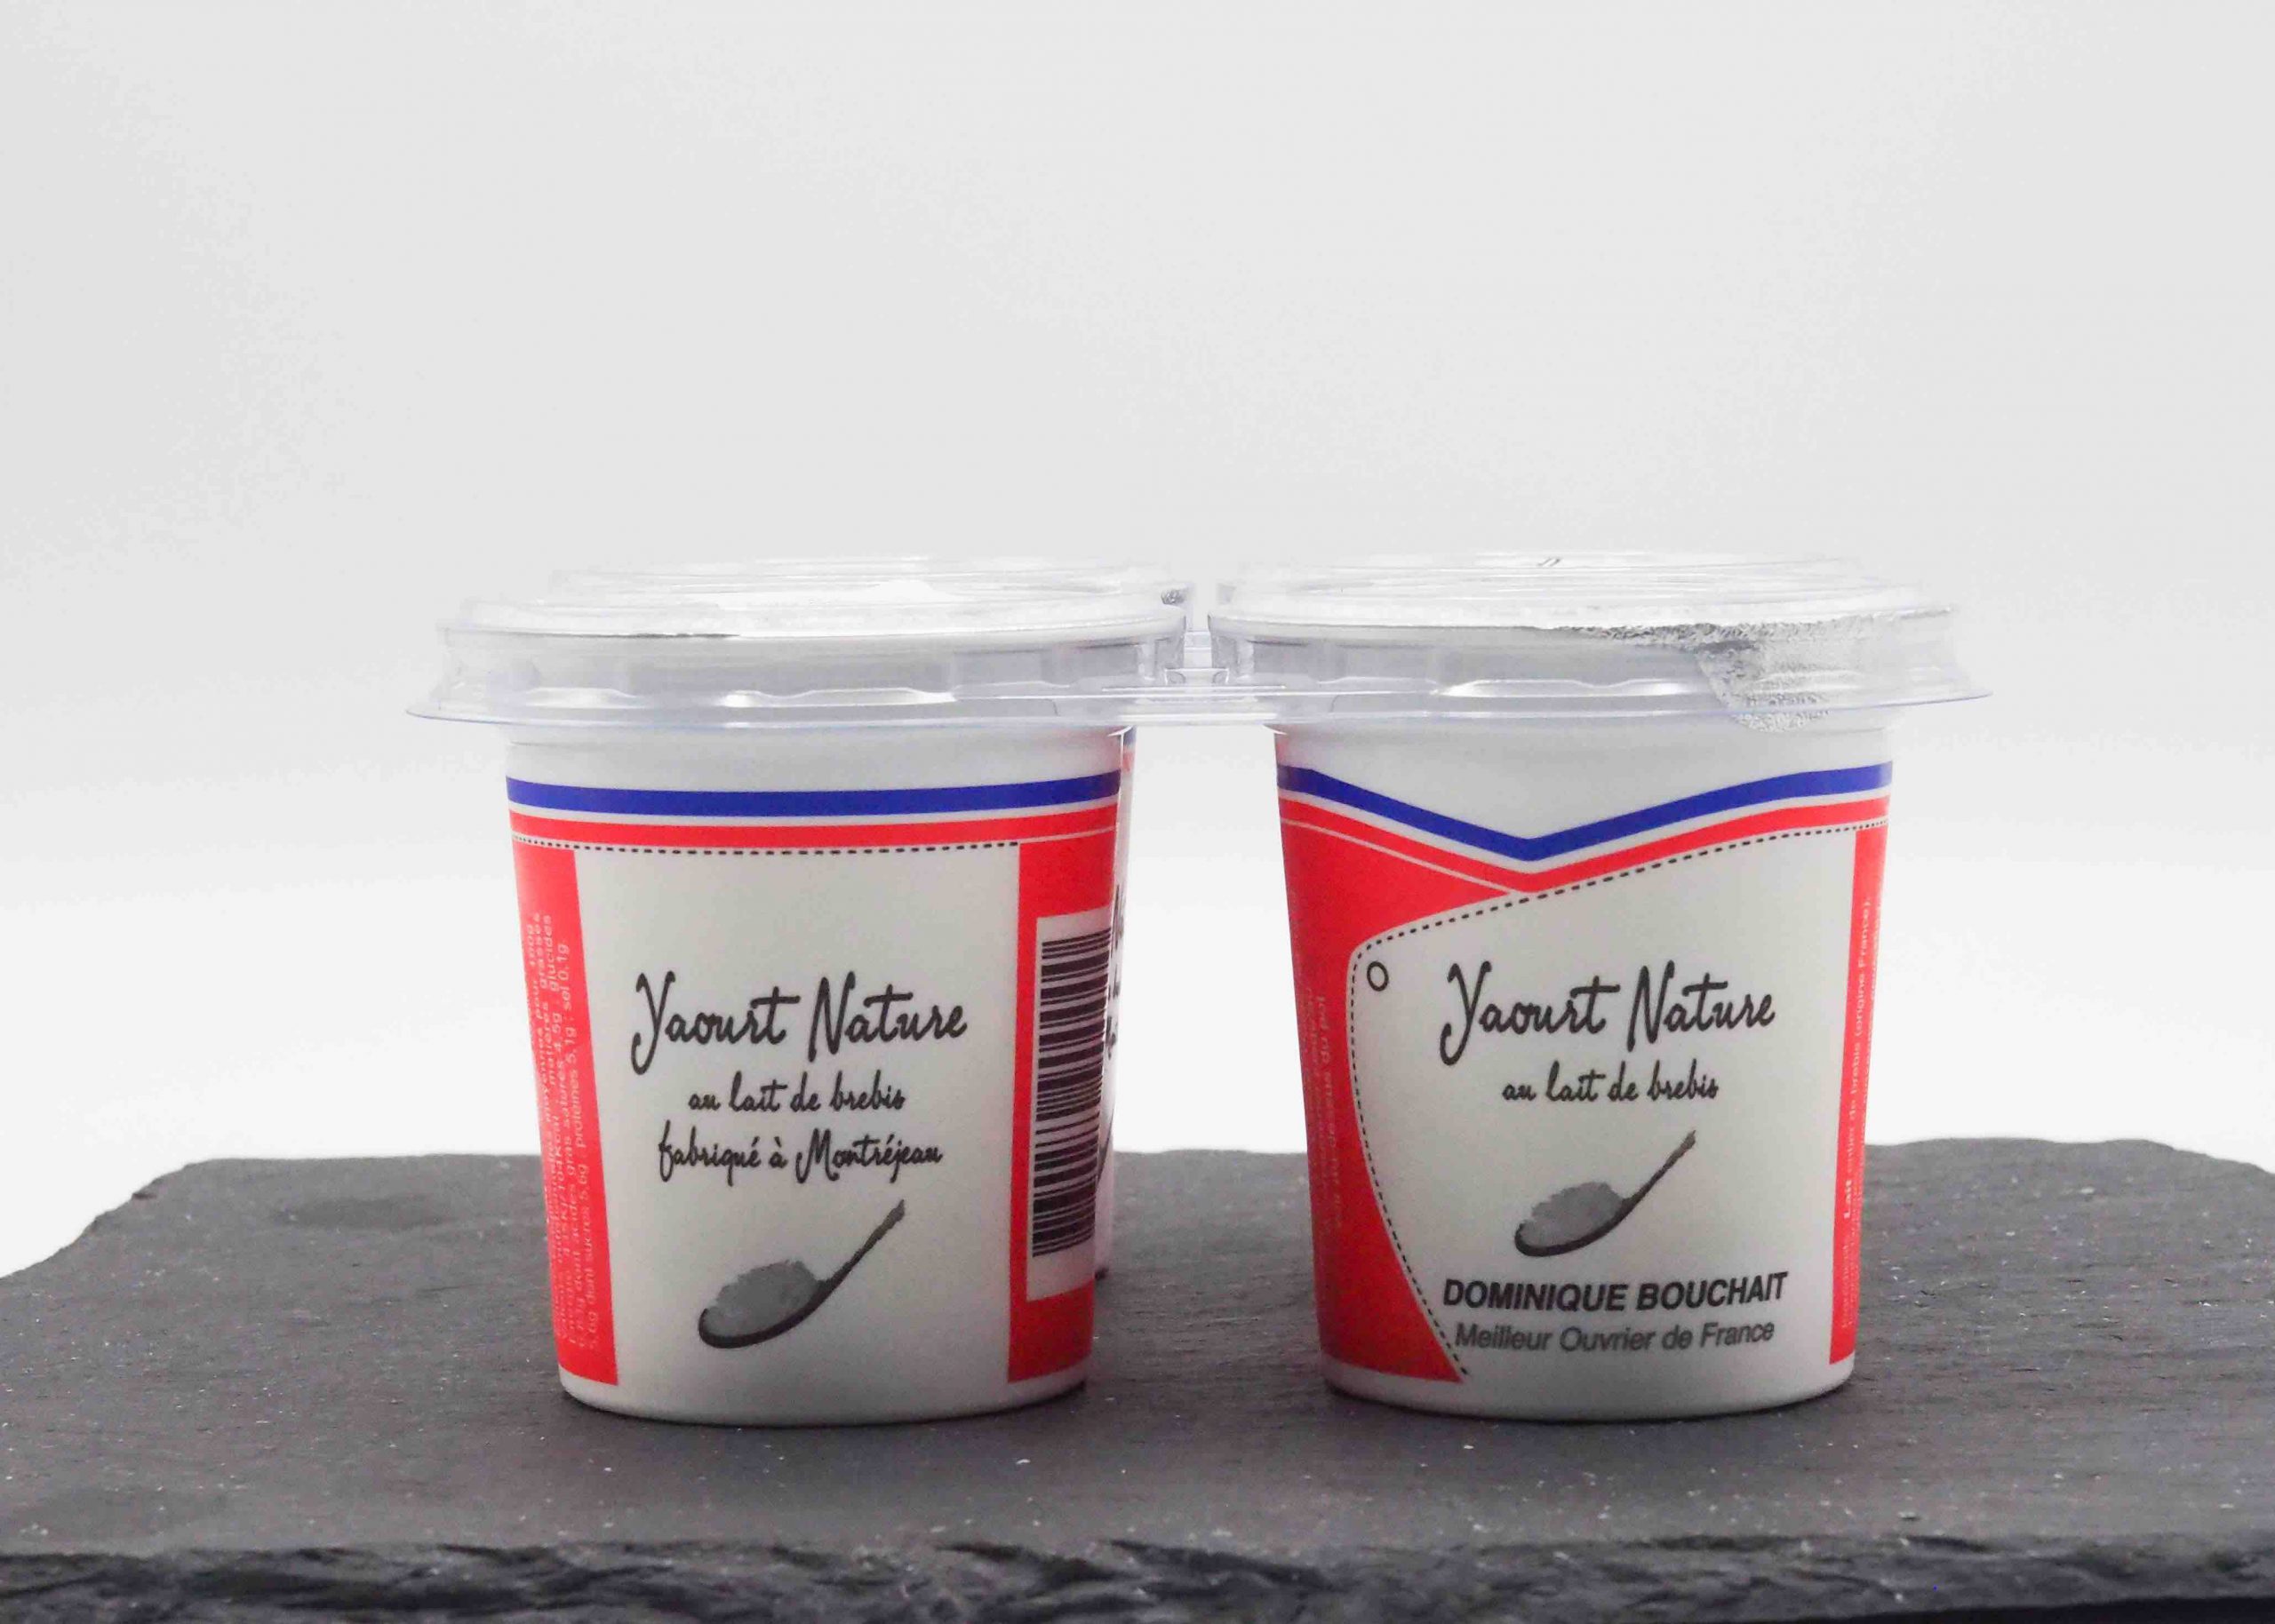 Vente de yaourt en ligne par Fromage Napoleon Meilleur Ouvrier de France Dominique Bouchait